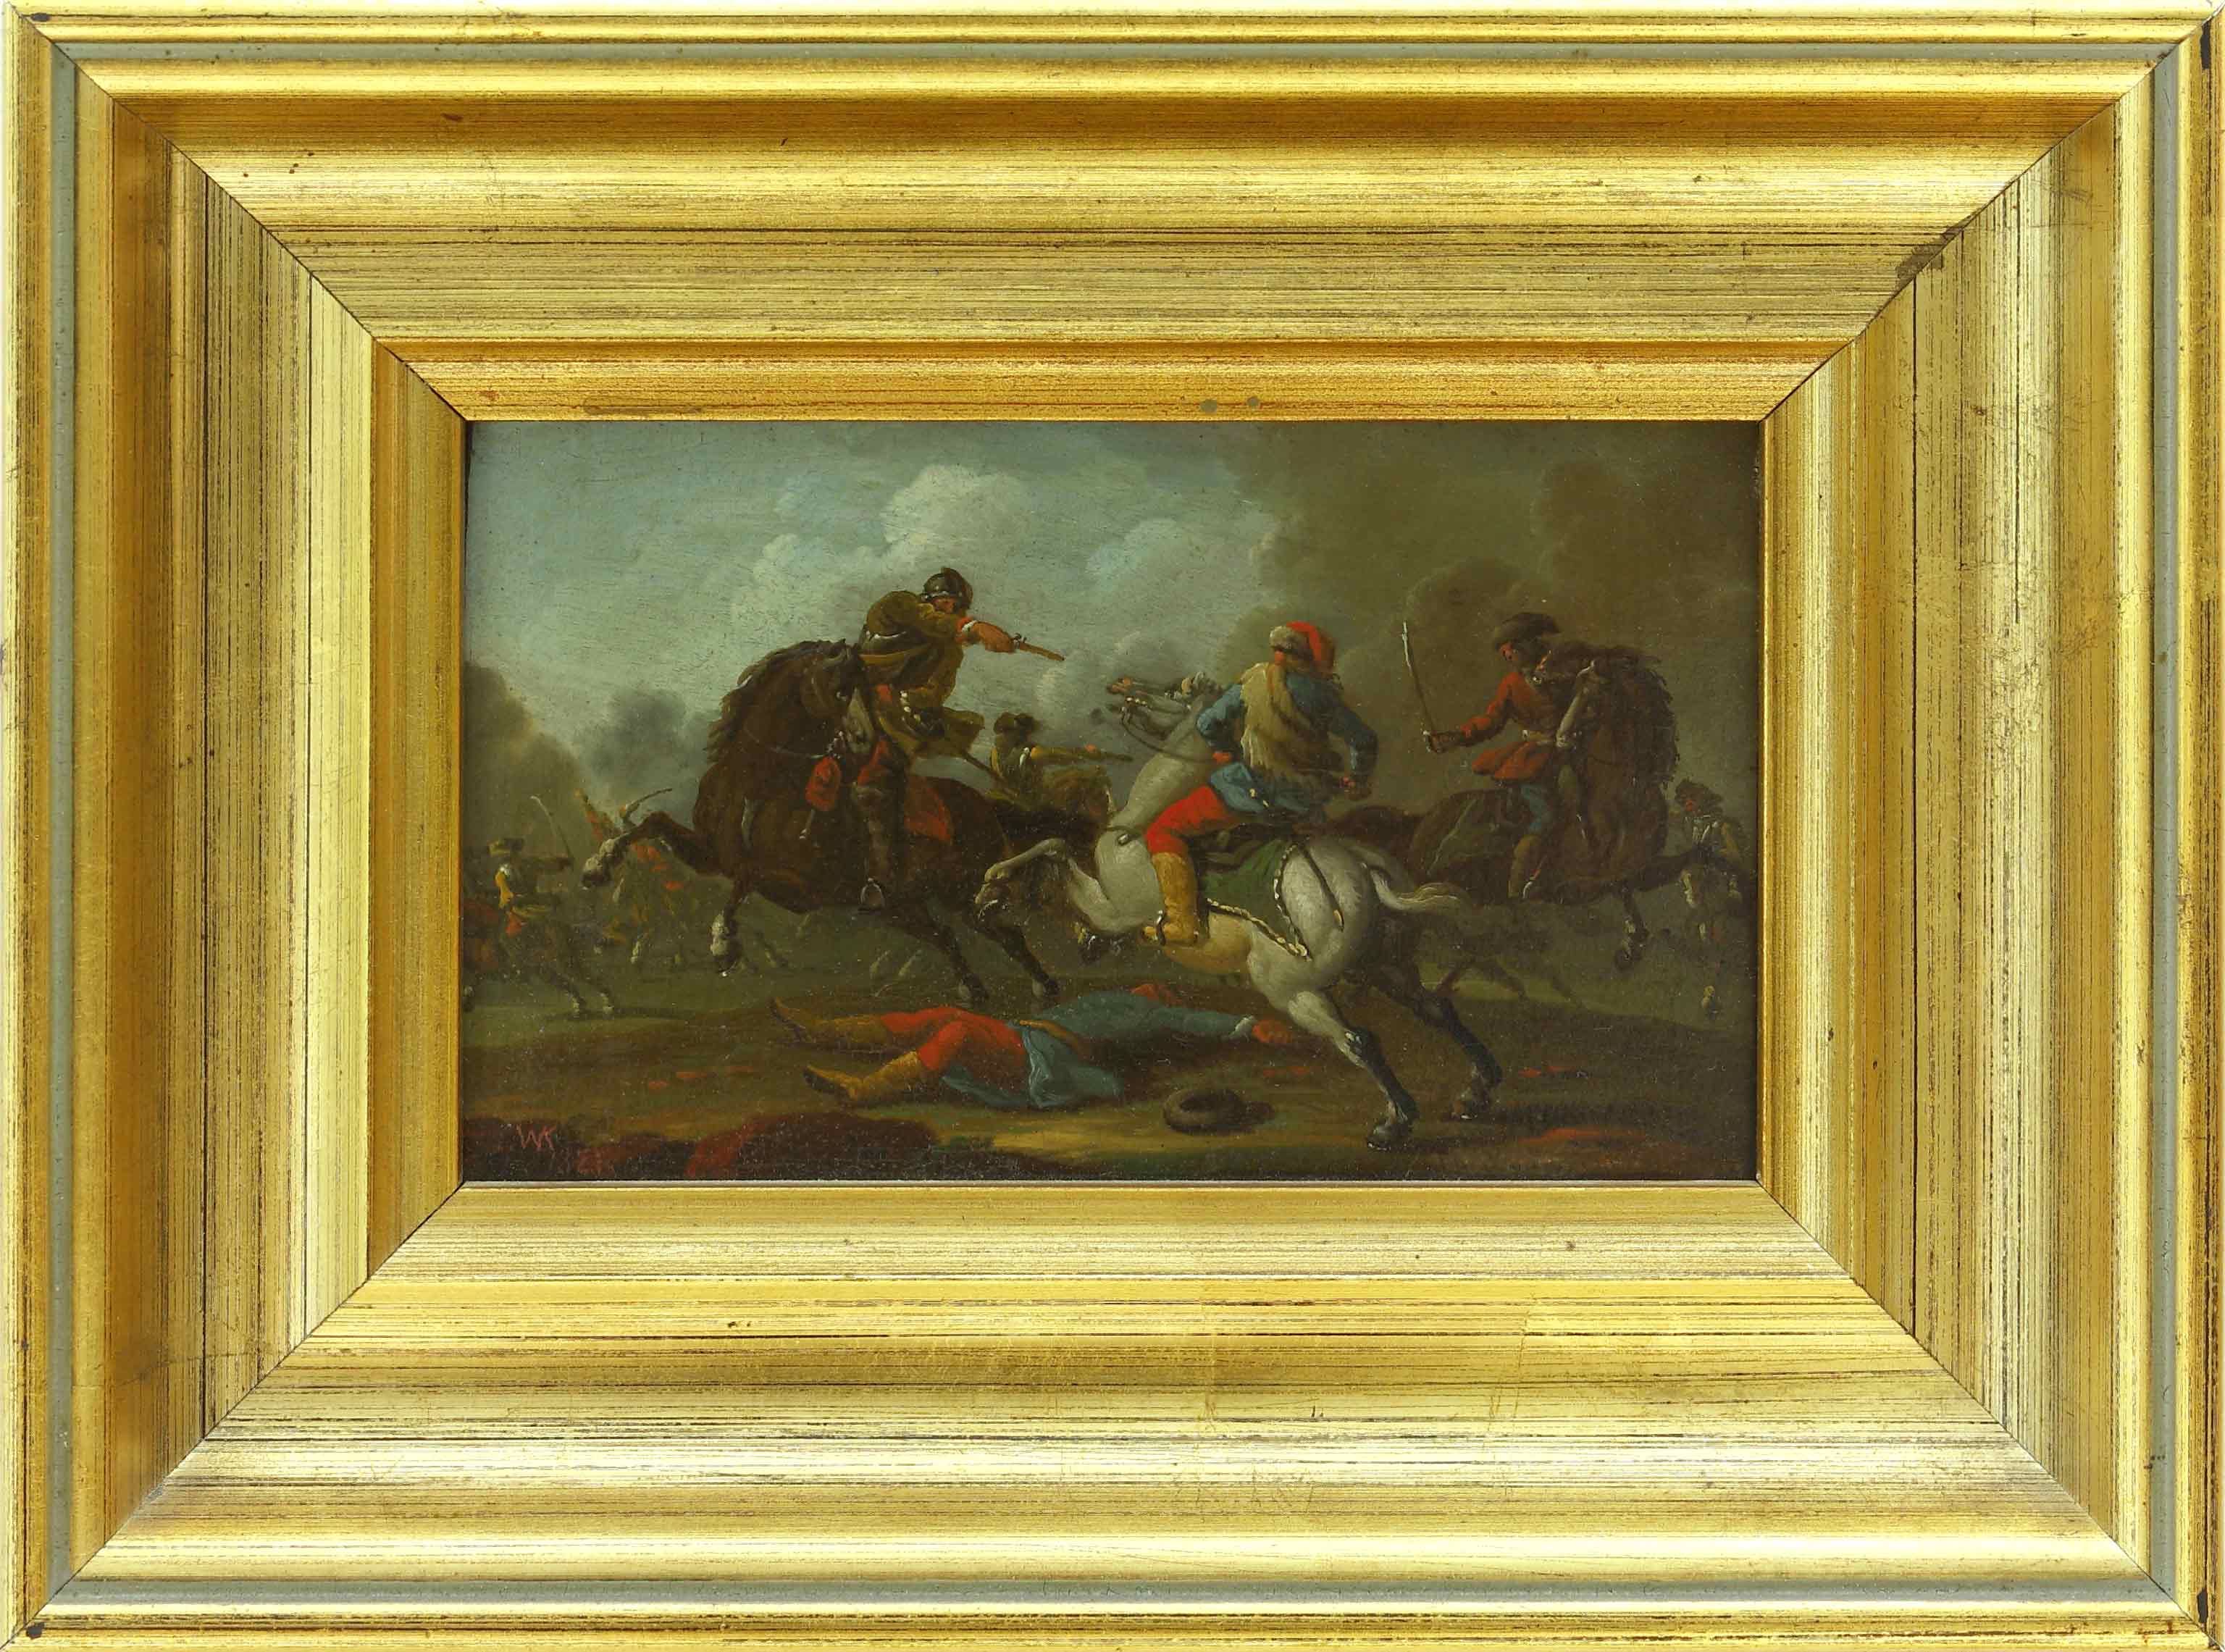 Auktionshaus Quentin Berlin  Gemälde Kobell  Wilhelm von (1766 Mannheim - 1855 MÃ¼nchen) zugeschr. Schlachtenszene.  Reitergruppe vor einem Zelt. 1821. GegenstÃ¼cke. Ãl auf Papier 